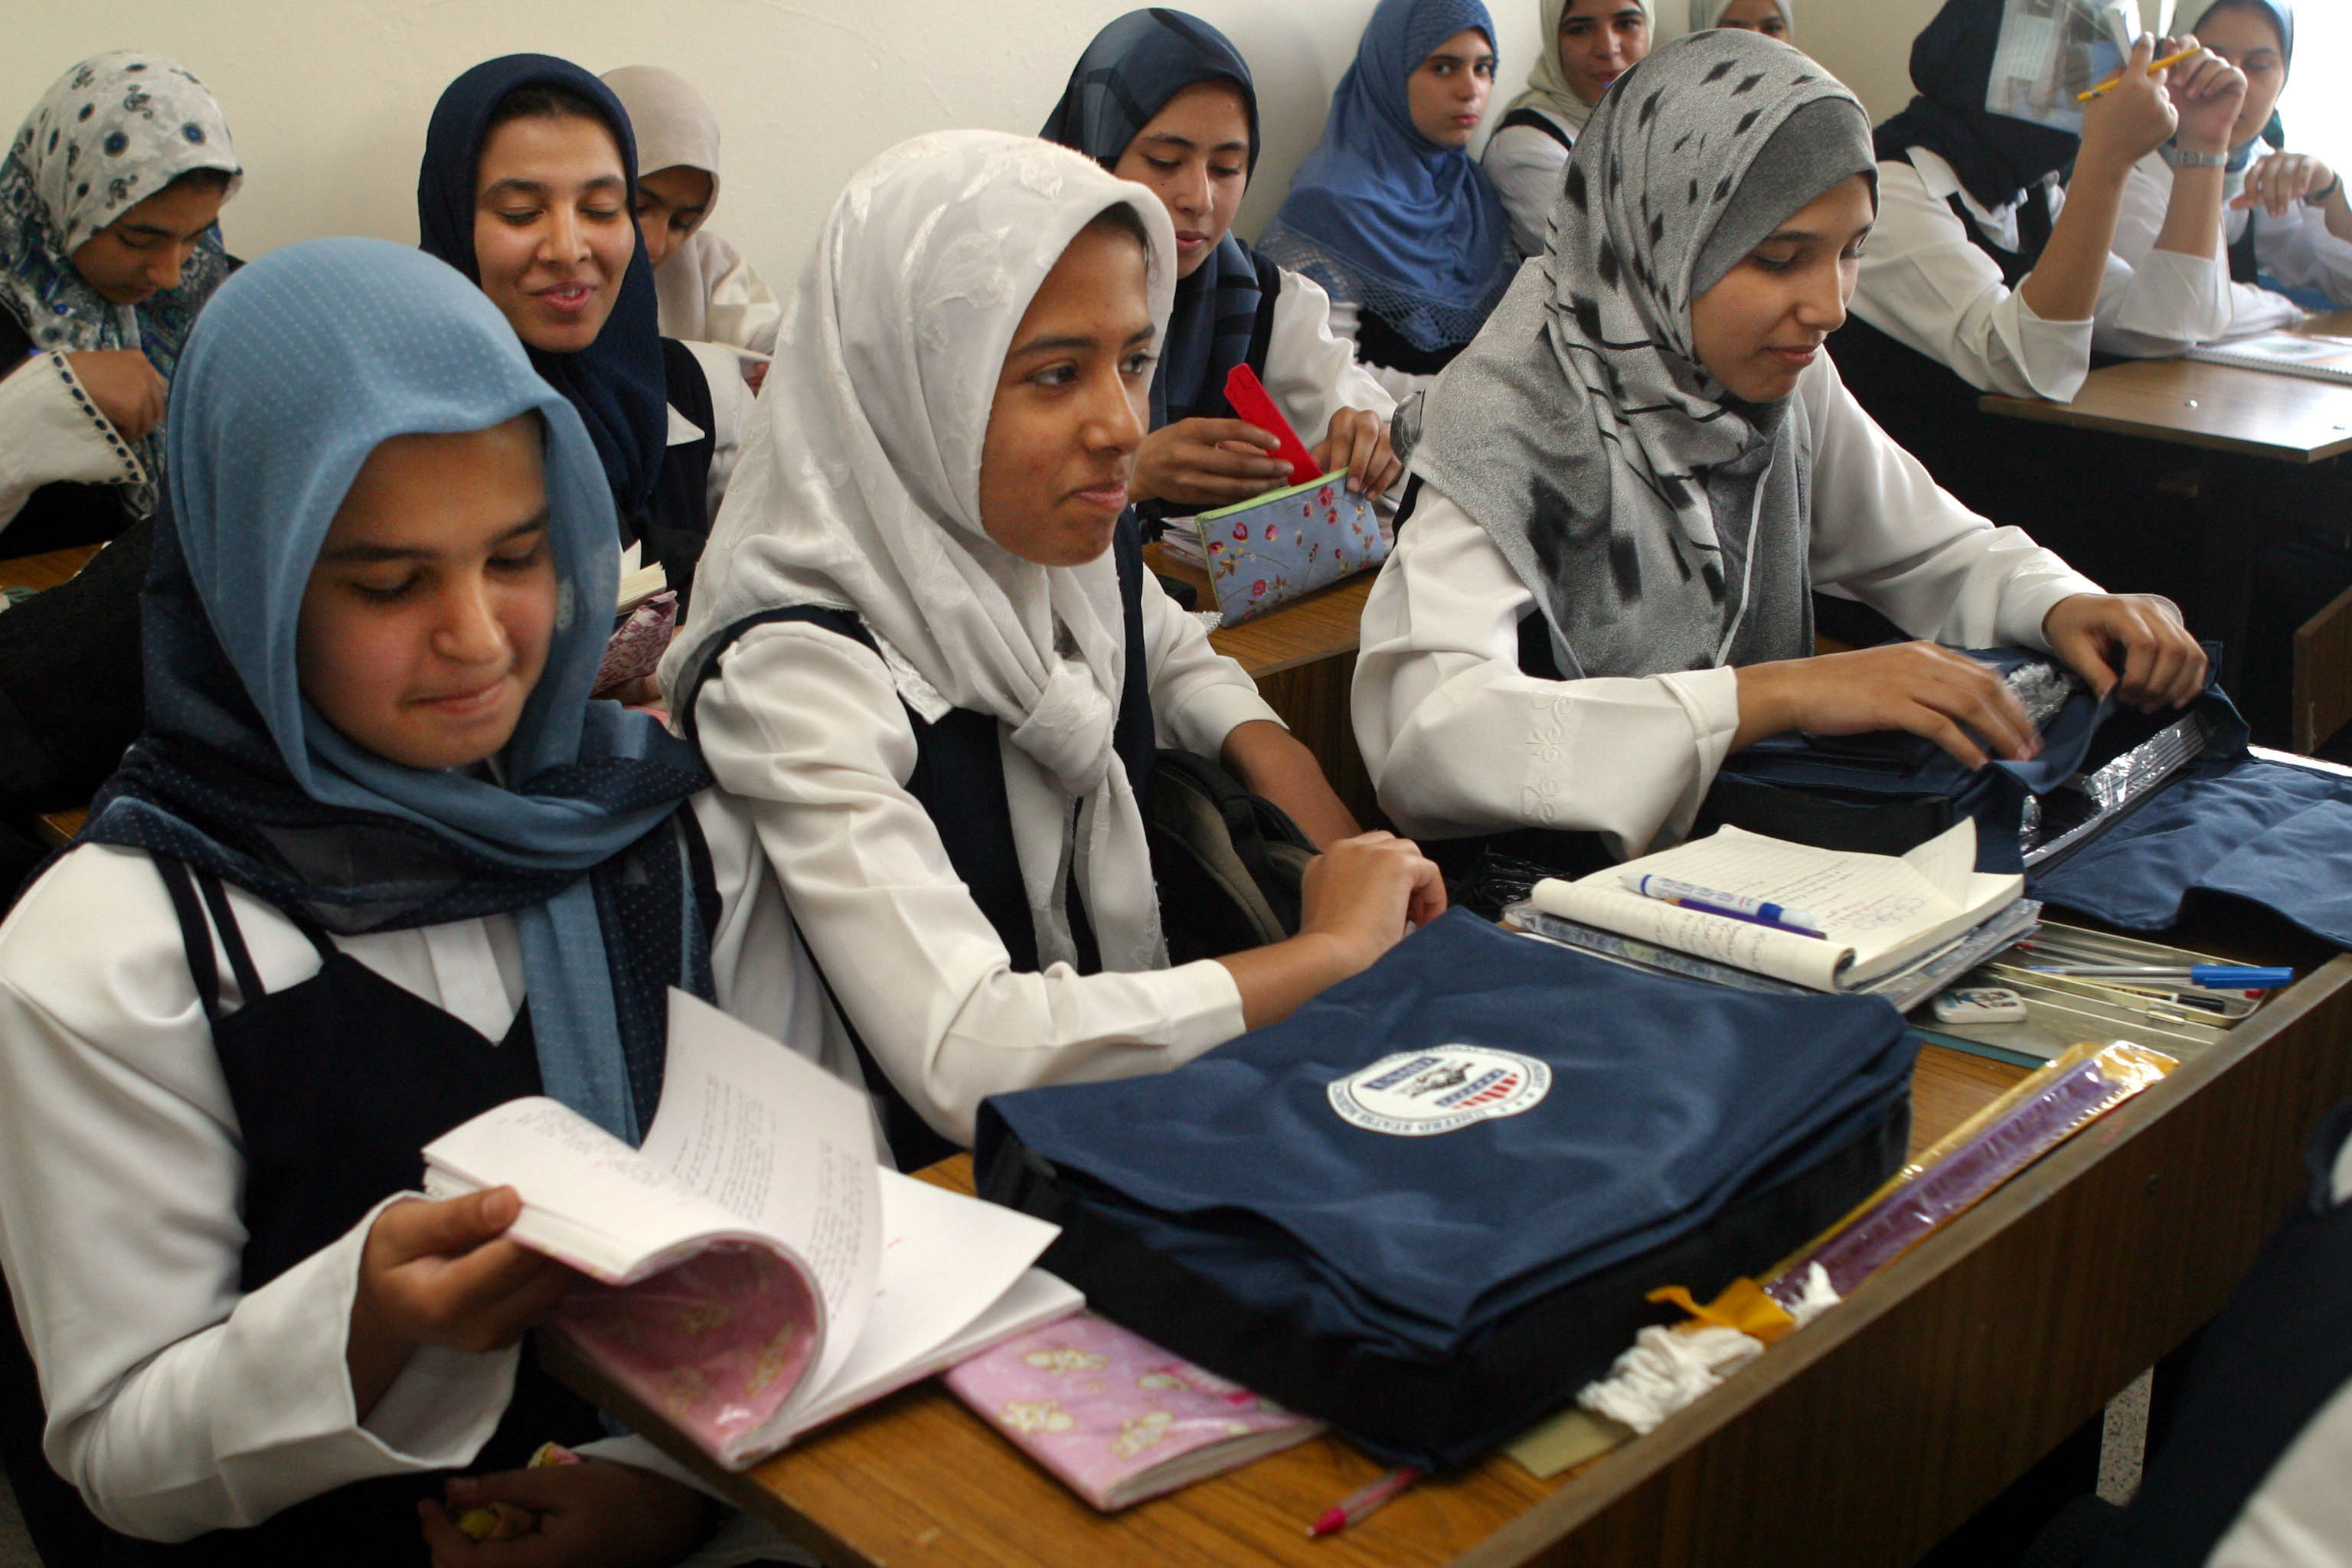 العراق يمدد تعليق دوام المدارس والجامعات إلى 21 آذار